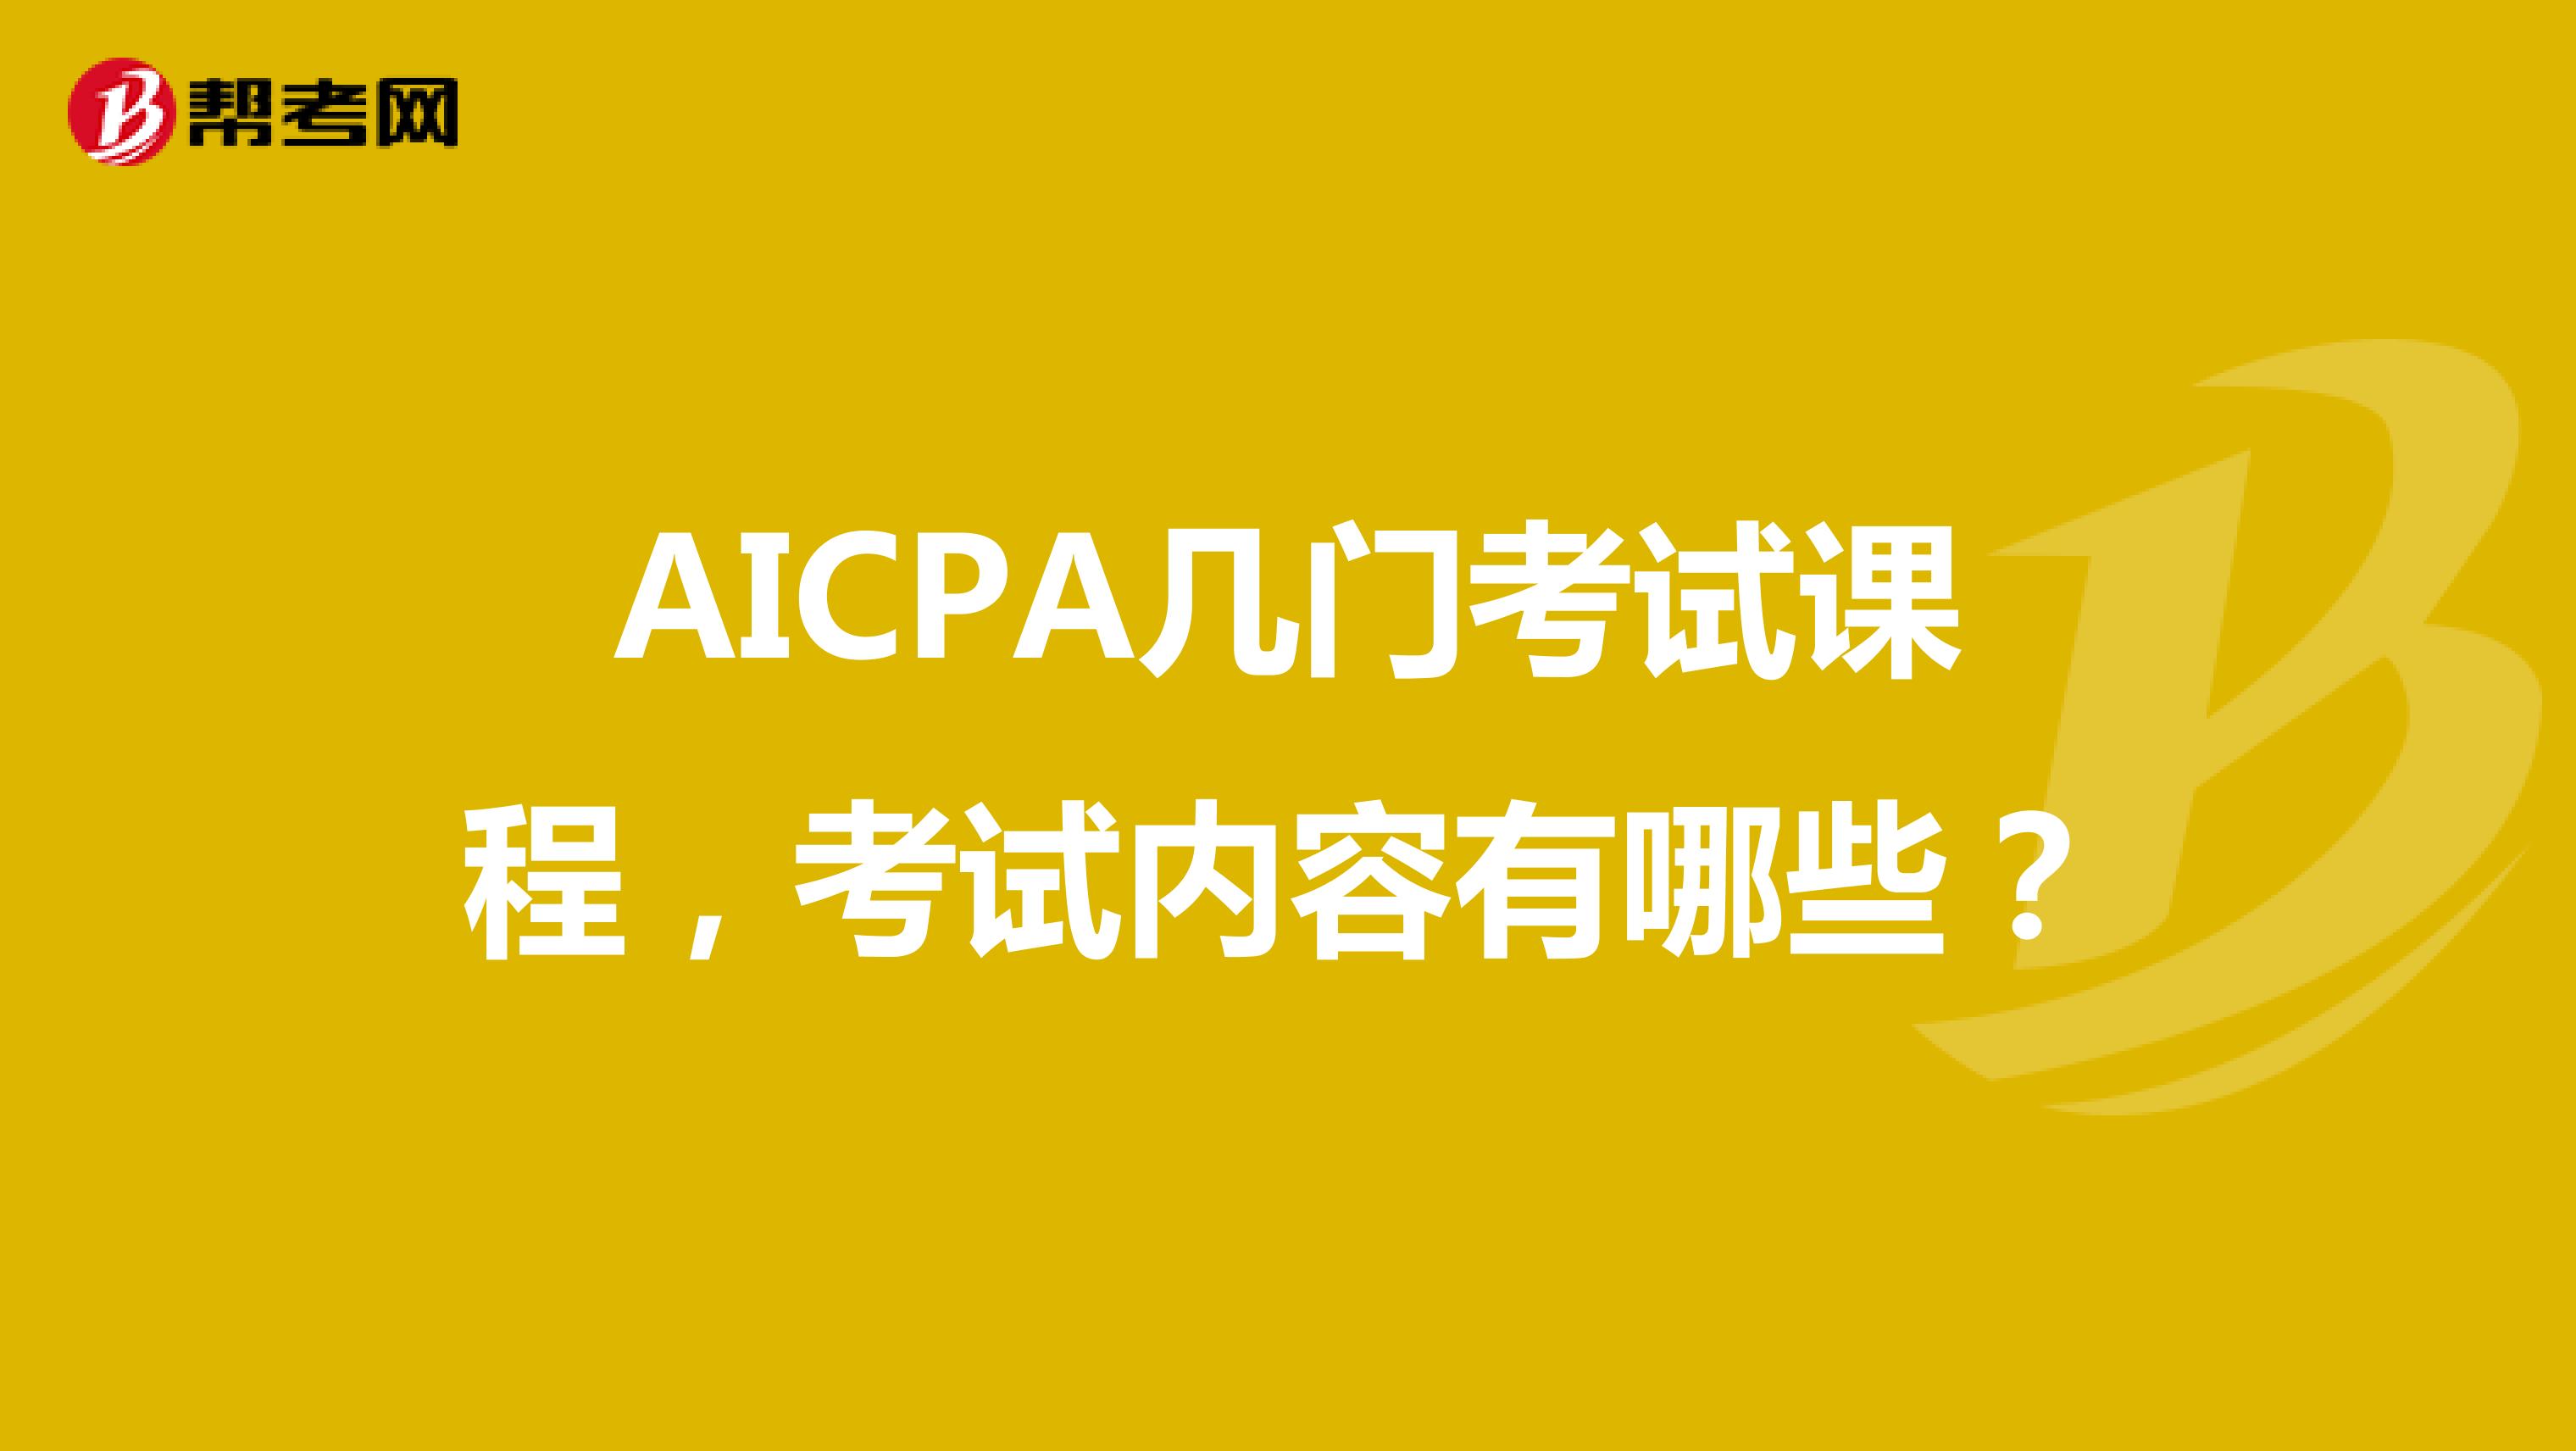 AICPA几门考试课程，考试内容有哪些？